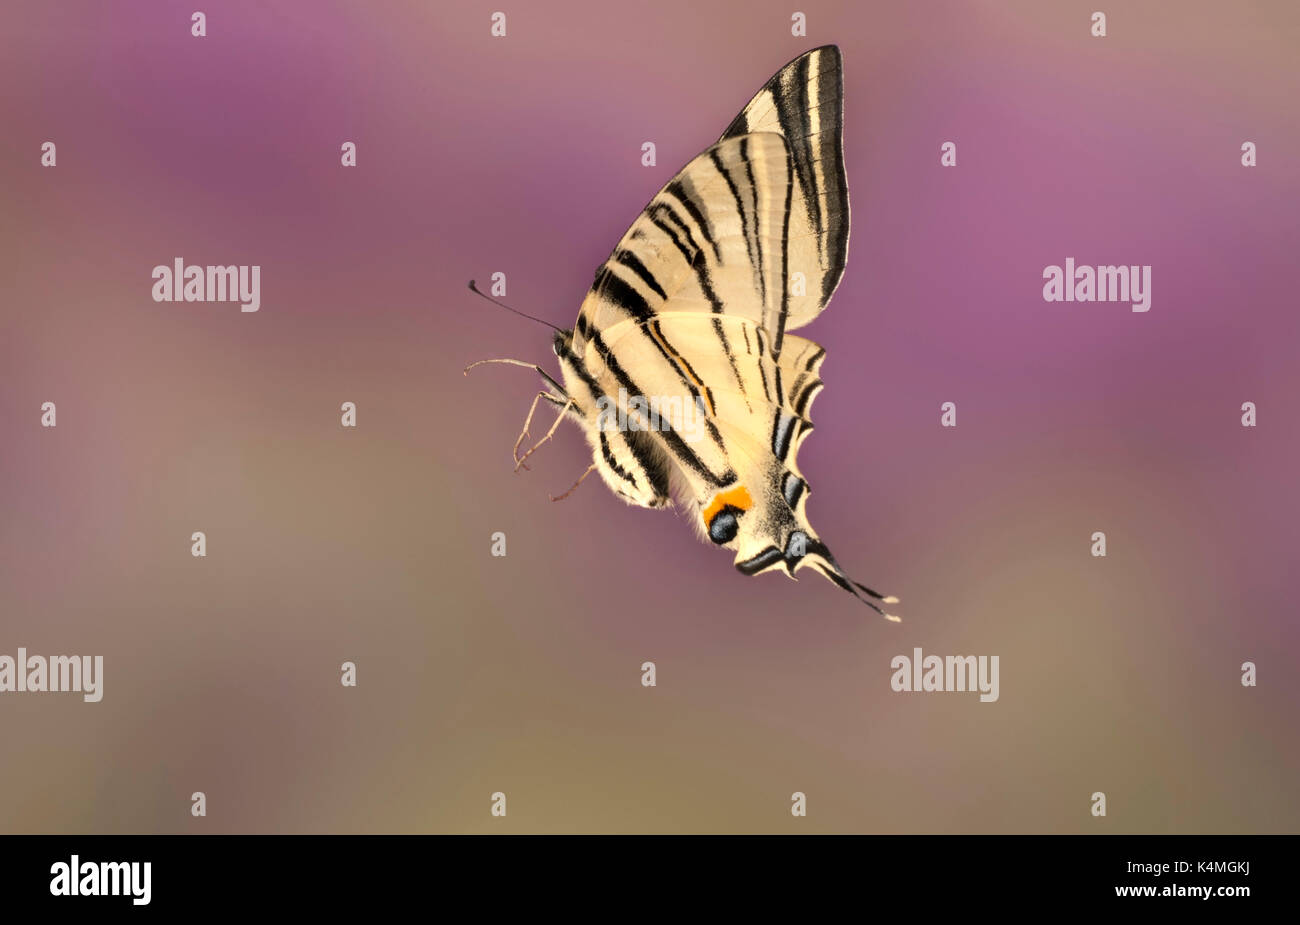 Iphiclides Segelfalter Schmetterling, Art, Europa & Naher Osten Arten, Frühling und Frühsommer, fliegen, Flug, high speed Foto Stockfoto